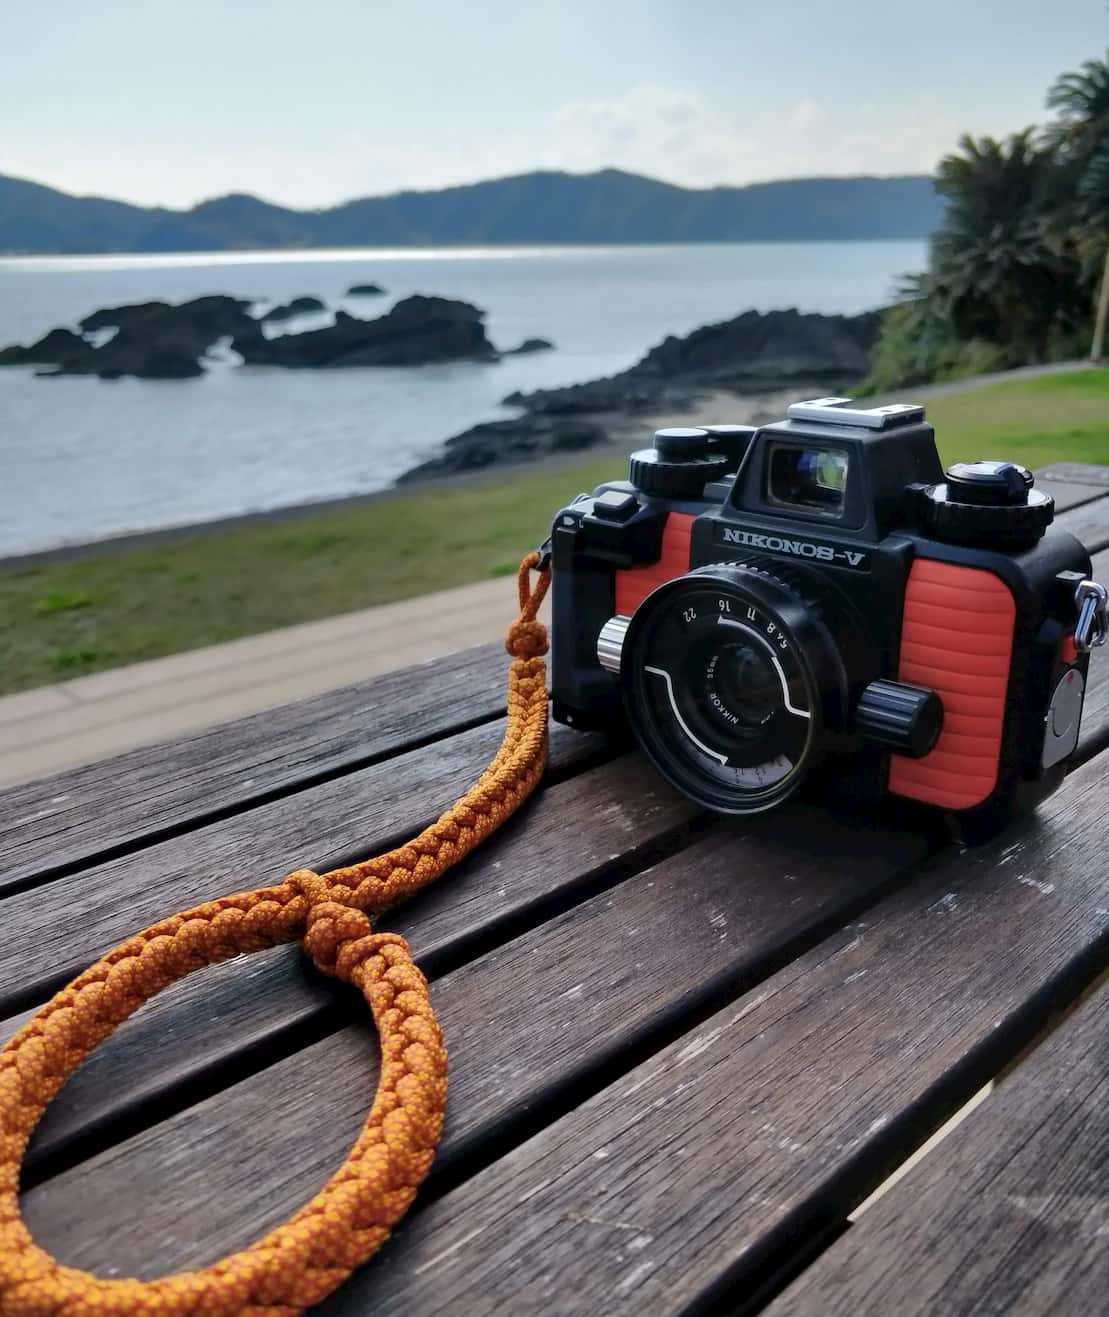 カメラ フィルムカメラ ニコノスV - 水中冒険カメラ | Tabi Traveler